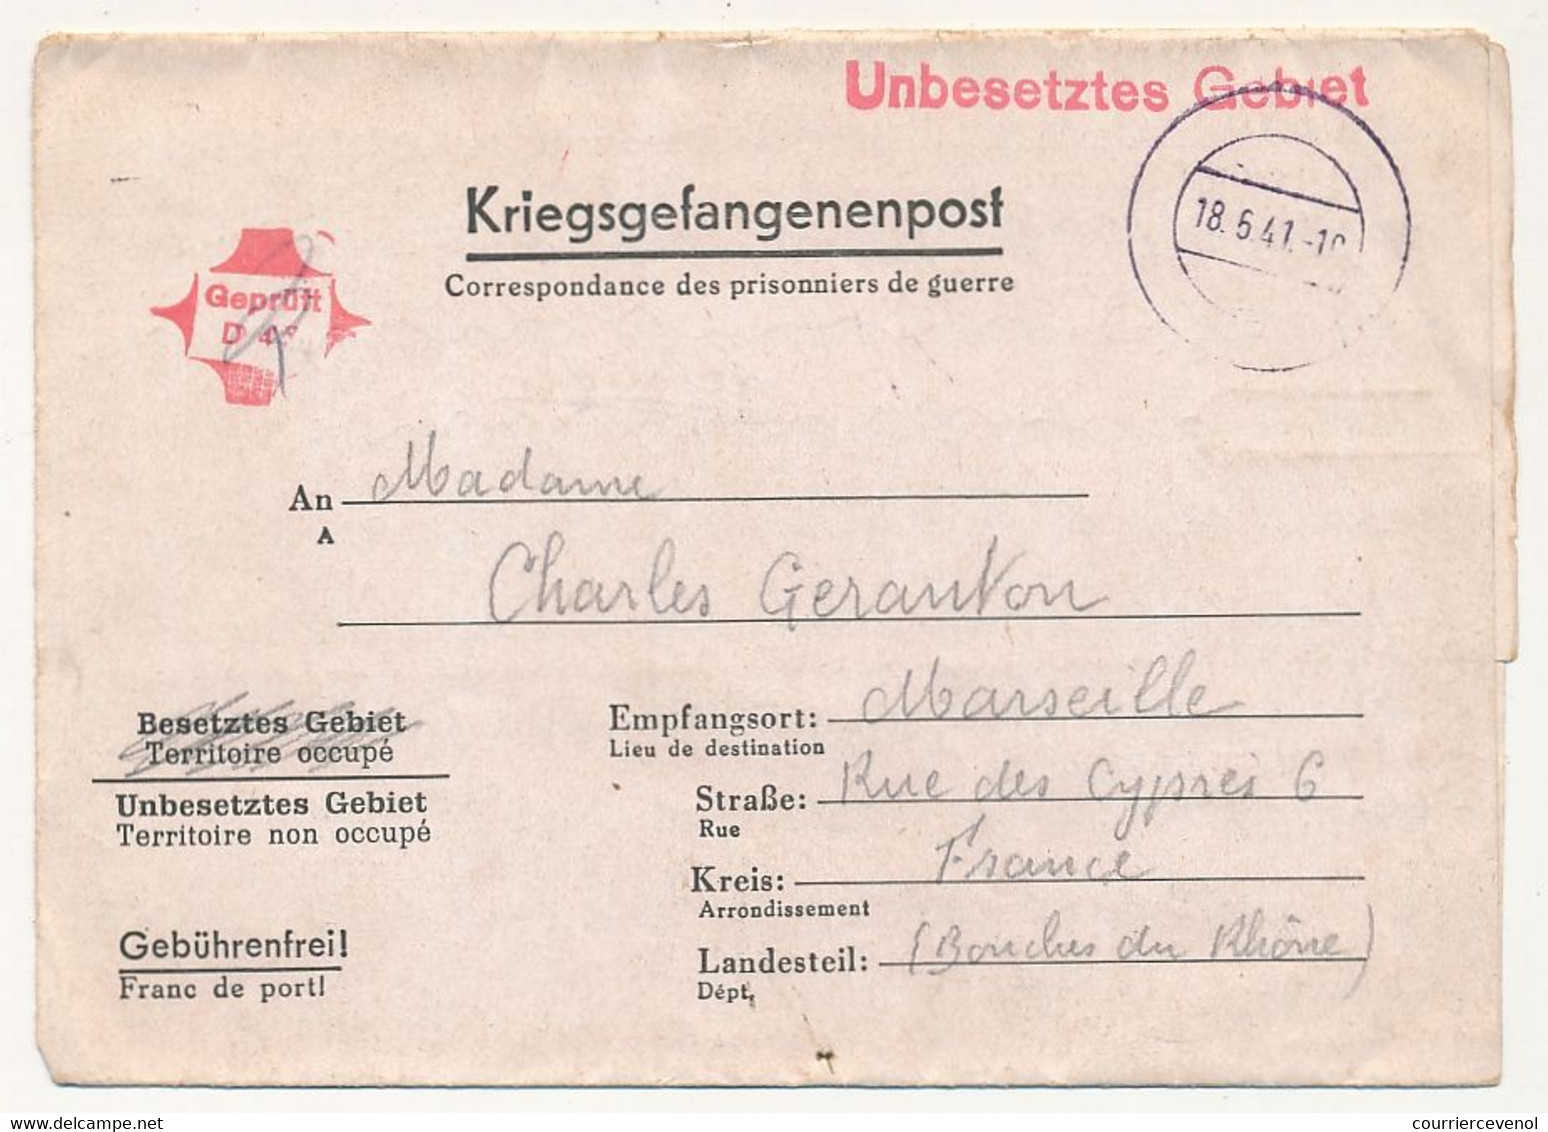 FRANCE - Correspondance des PG - du Stalag XIII B - Censeur Geprüft 49 - 1941 + cachet "pour gagner du temps ..."